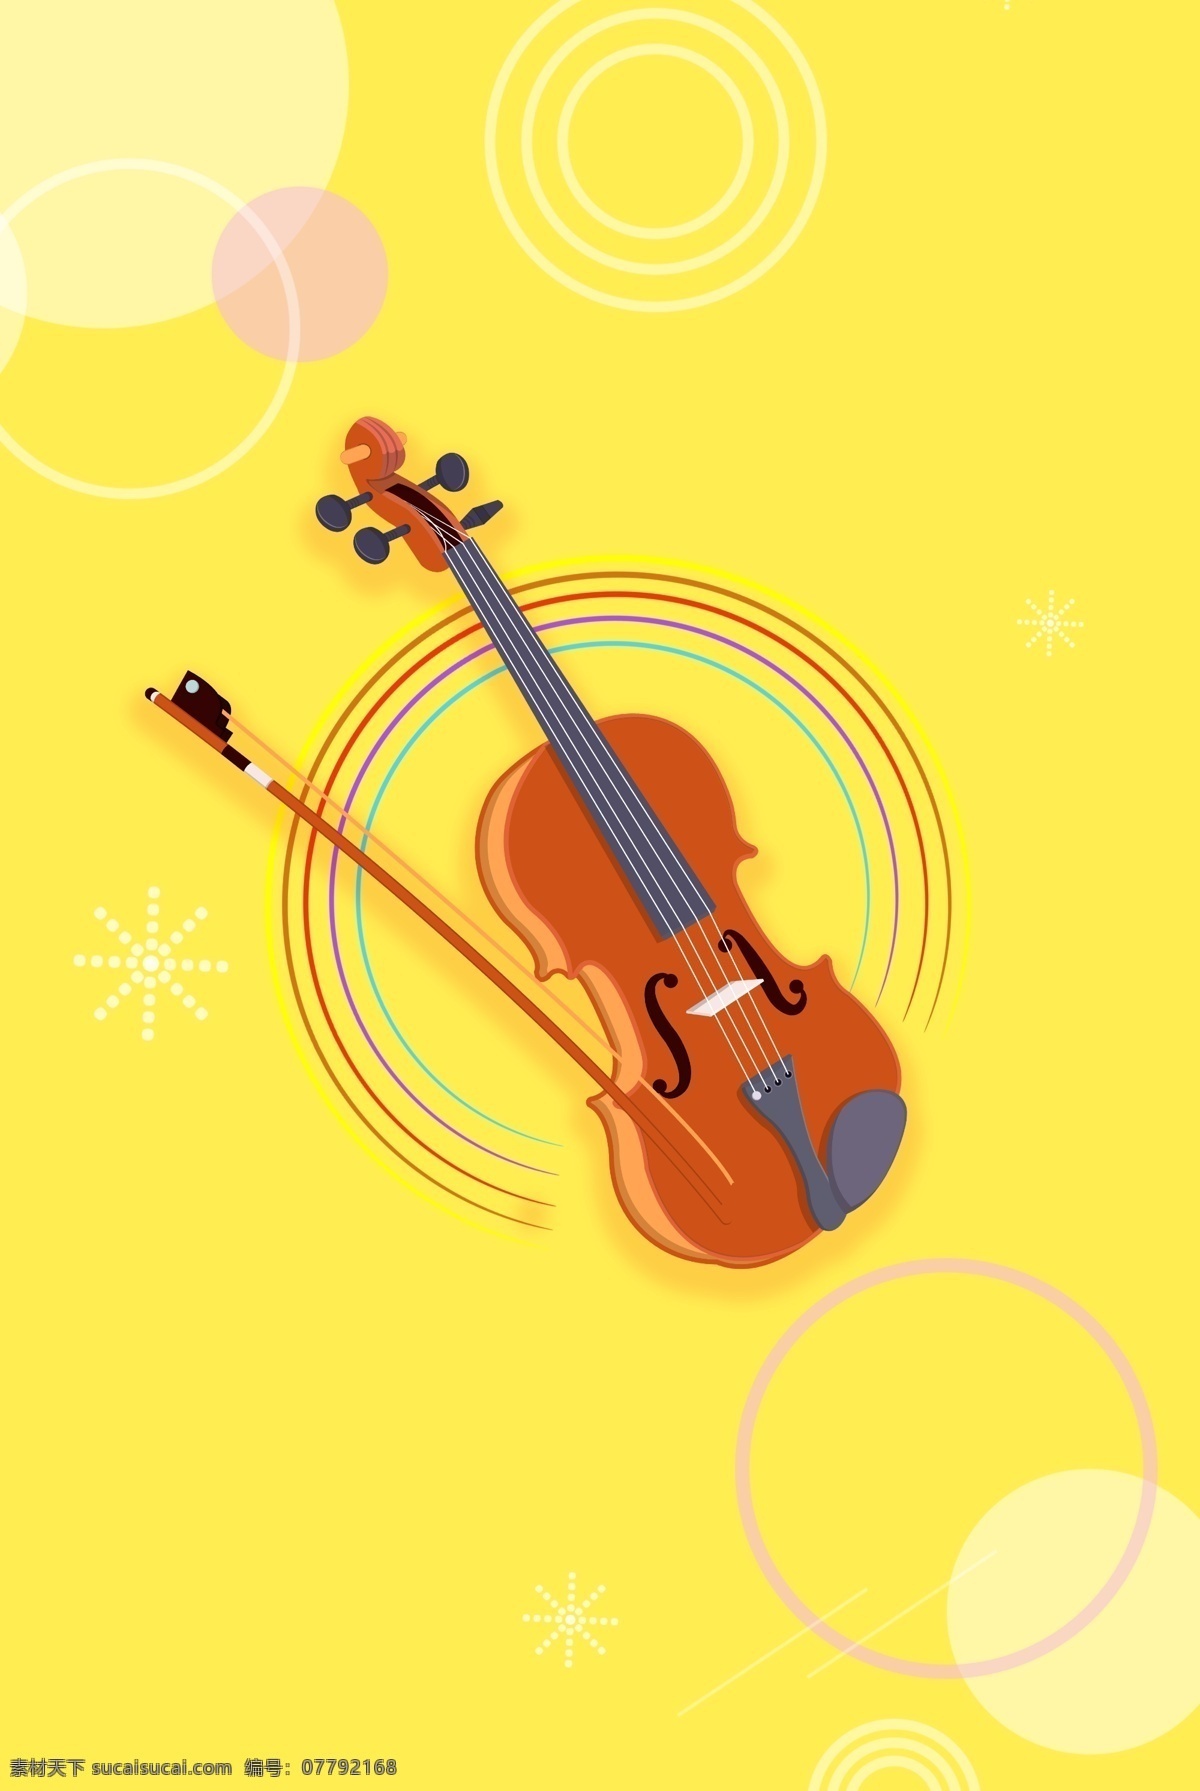 小提琴 音乐 演奏 海报 背景 乐器 艺术 动听 音符 蓝色 白色 粉色 黄色 圆圈 琴声